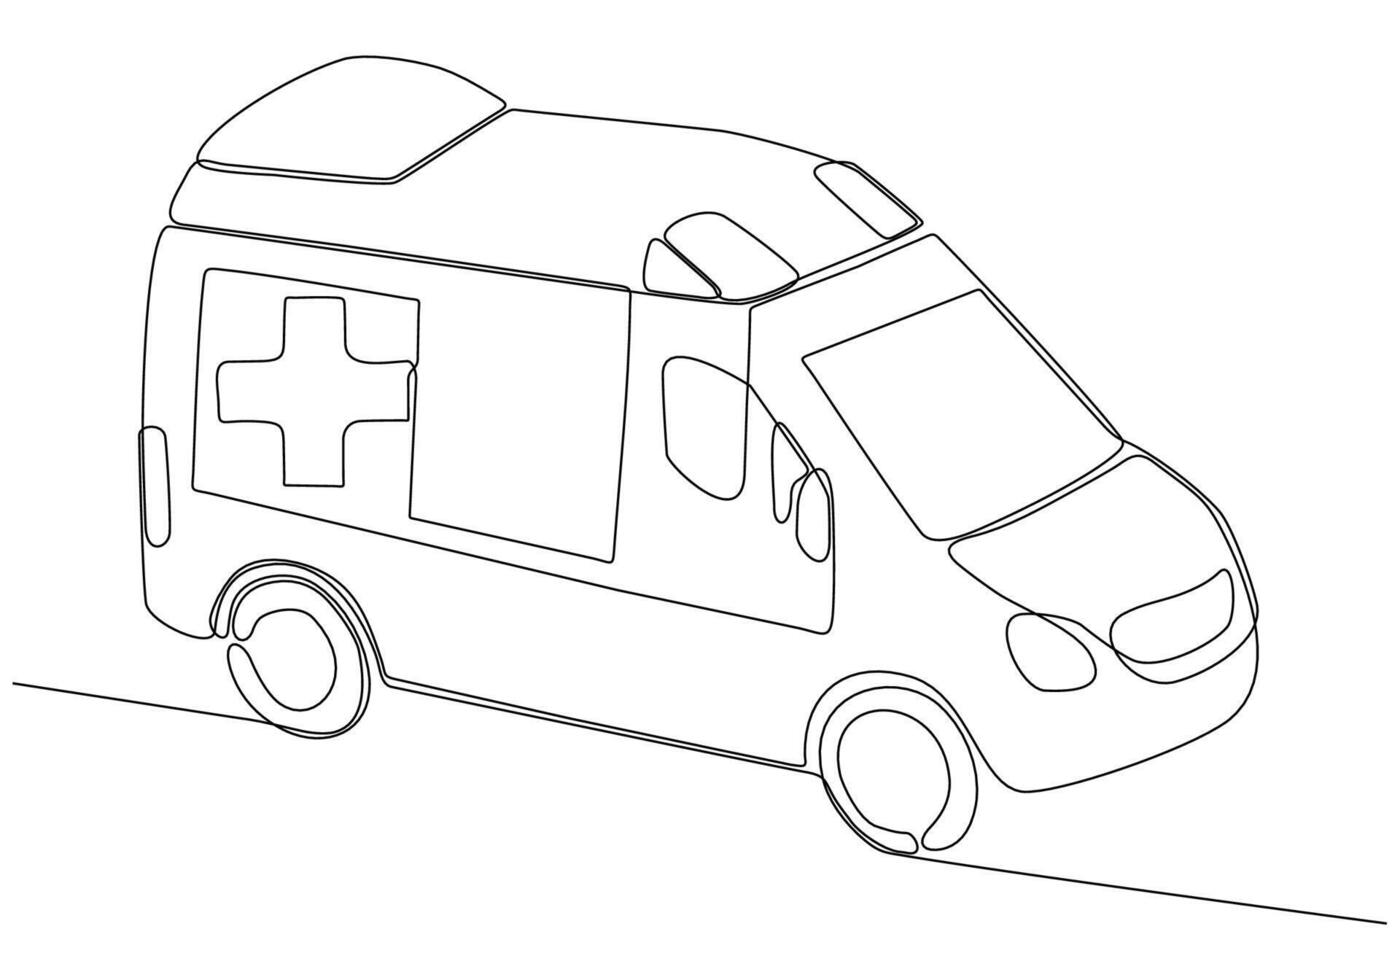 dessin d'une seule ligne du véhicule d'ambulance de l'hôpital pour sauver un patient critique. 911 concept minimaliste isolé. illustration vectorielle de conception graphique de dessin au trait dynamique sur fond blanc vecteur